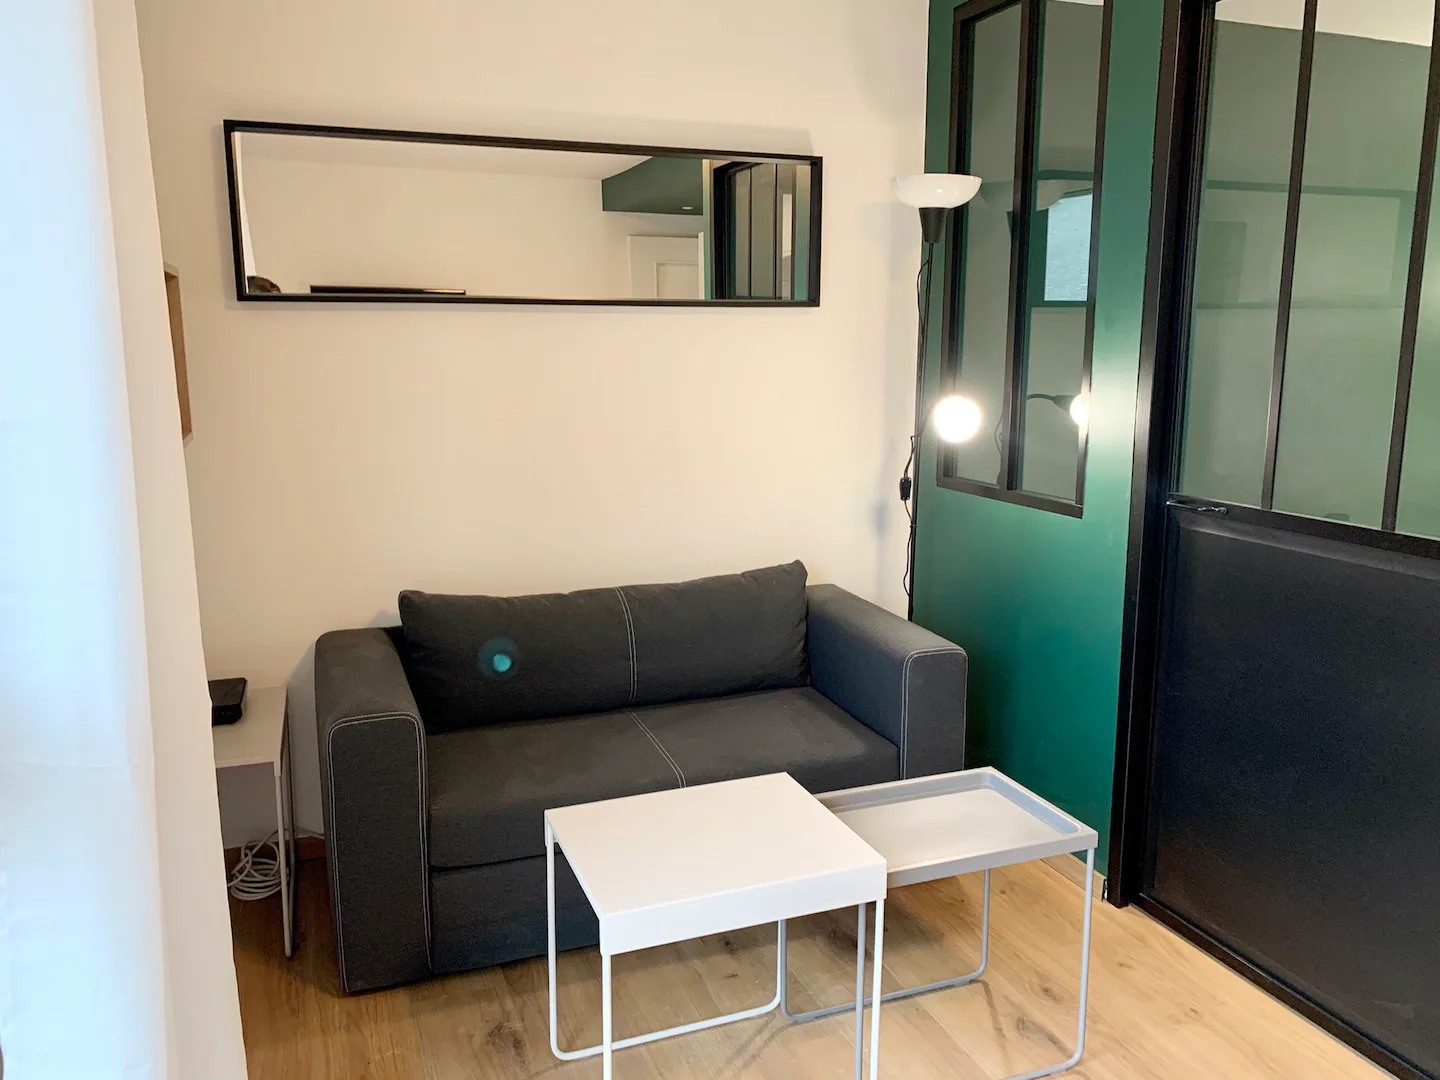 rennes-host-airbnb-conciergerie-le-glaz-appartement-mail-francois-mitterand-4